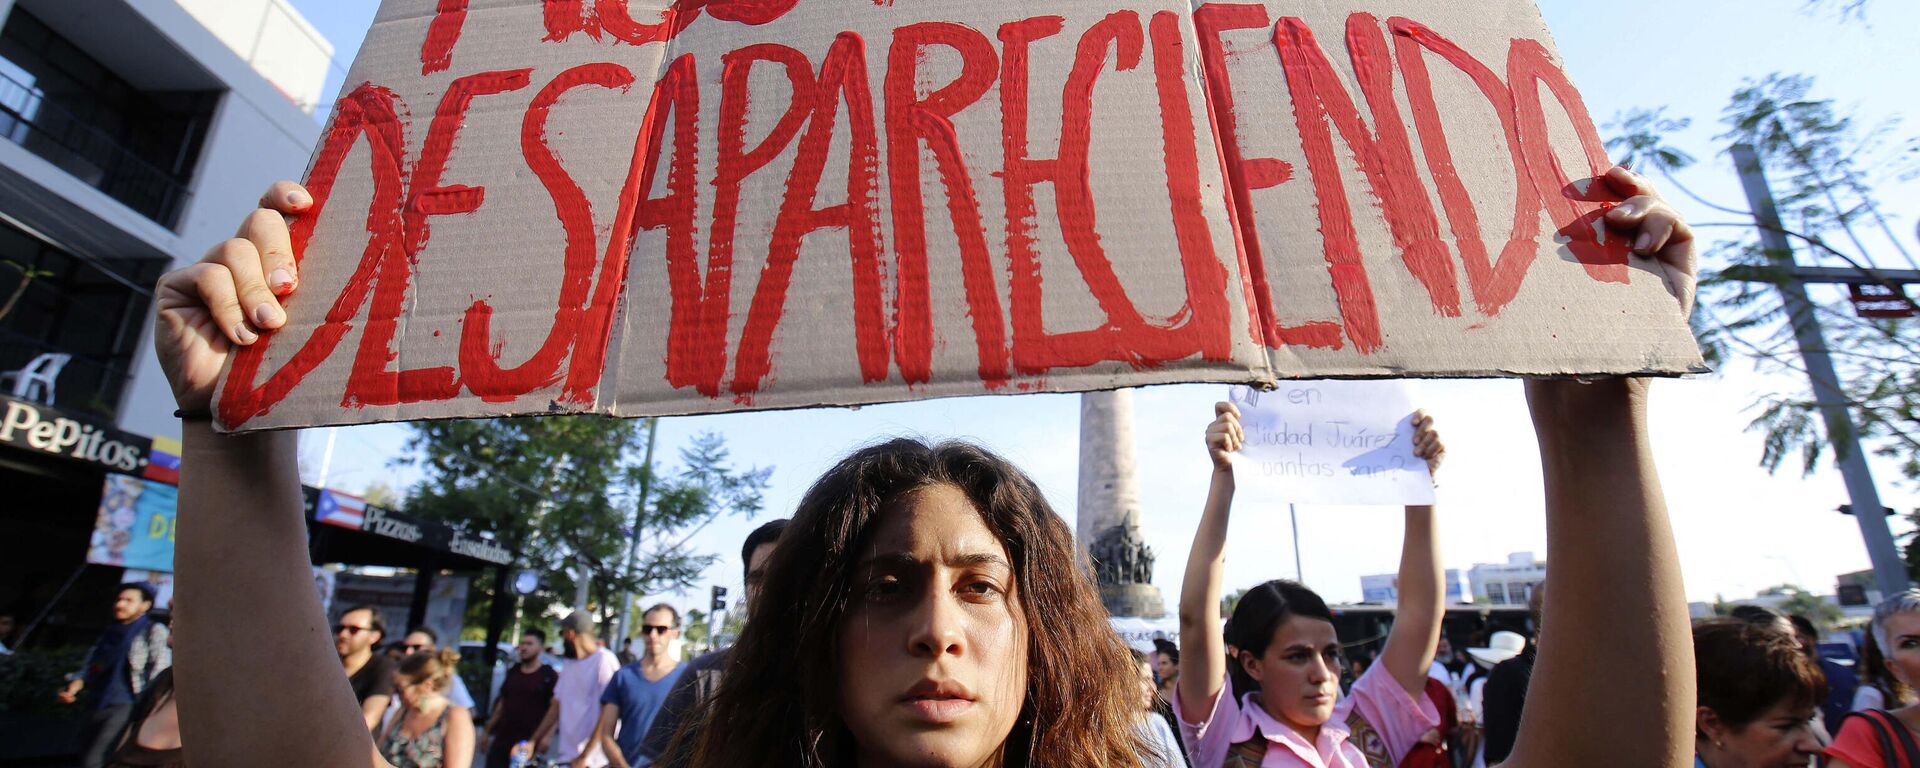 Protesta estudiantil en Guadalajara, Jalisco, contra la violencia y las desapariciones de personas en México - Sputnik Mundo, 1920, 26.08.2021